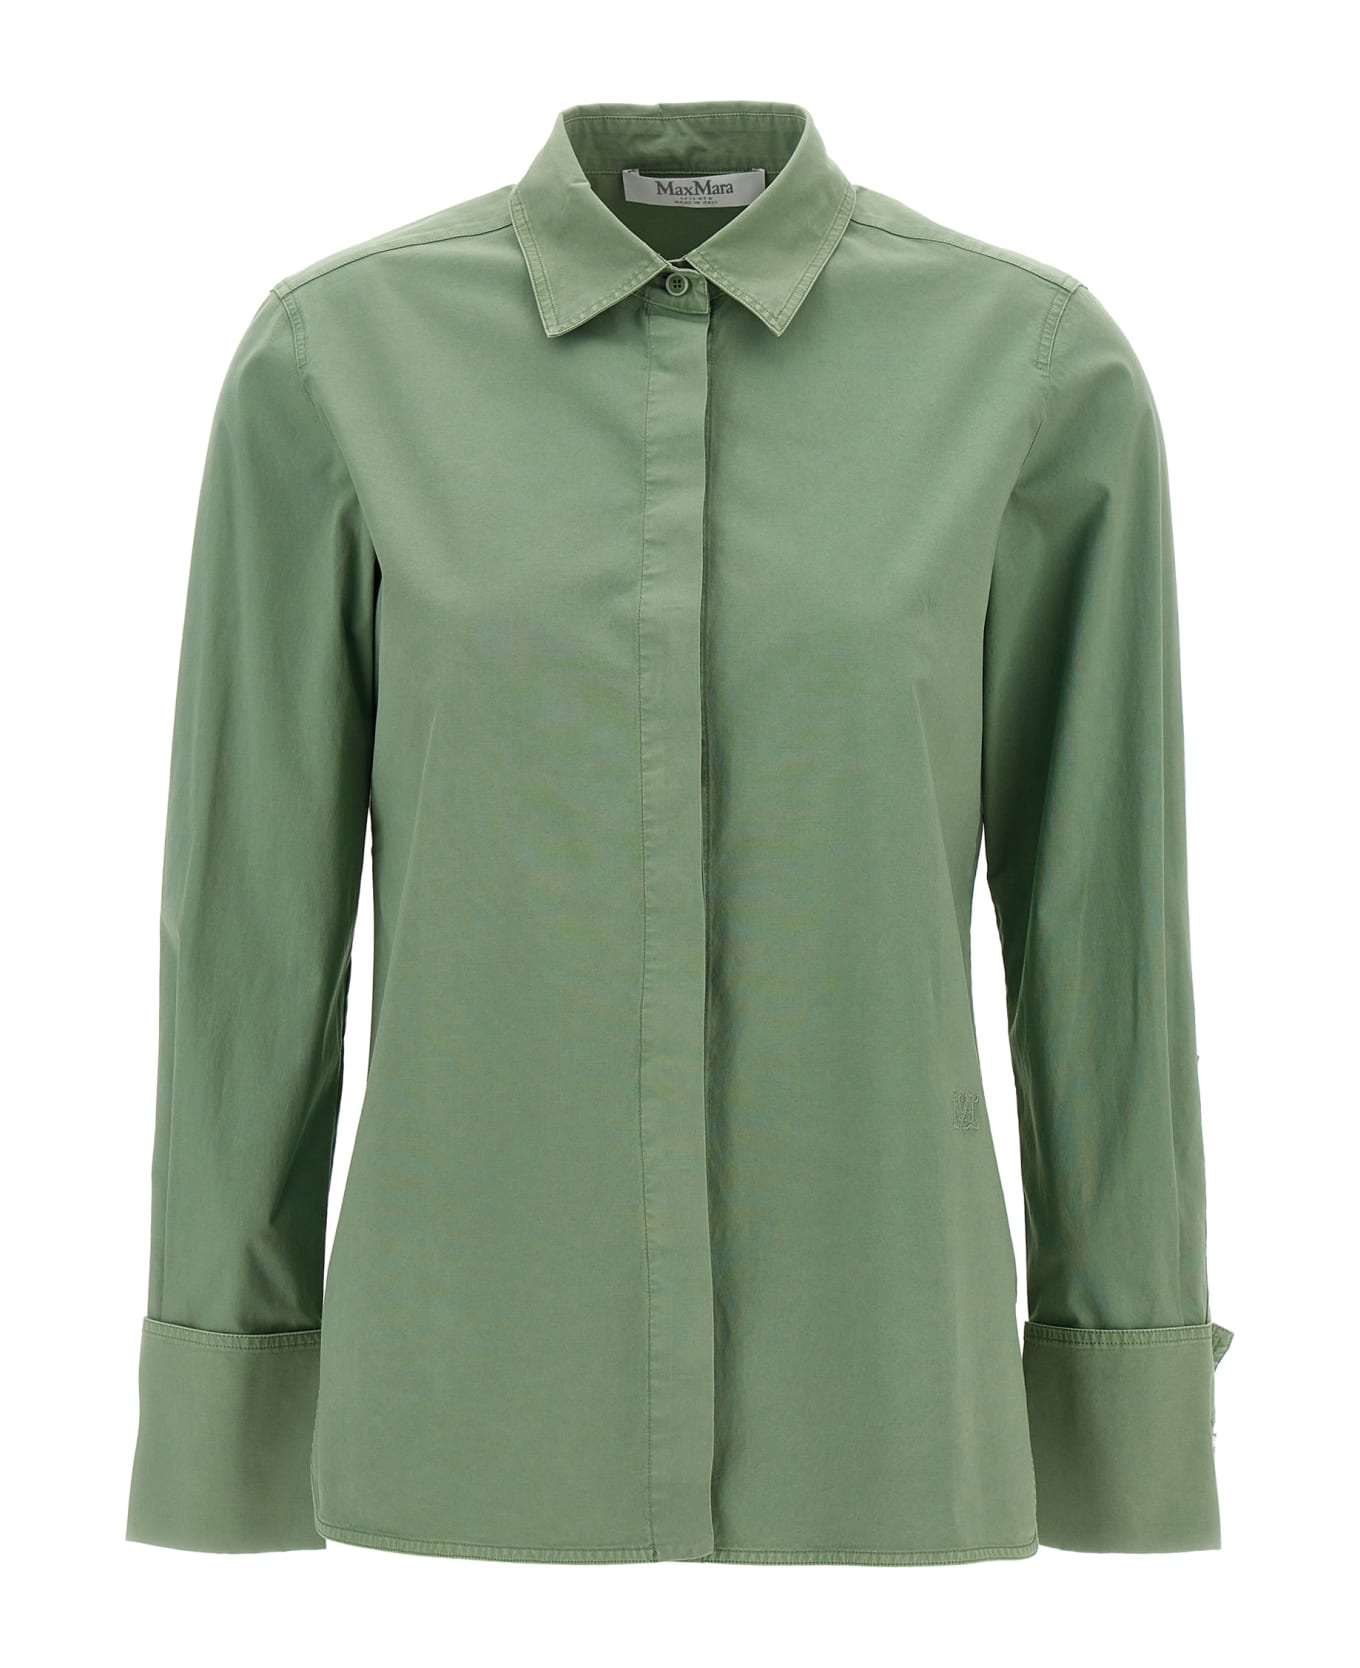 Max Mara 'francia' Shirt - Green